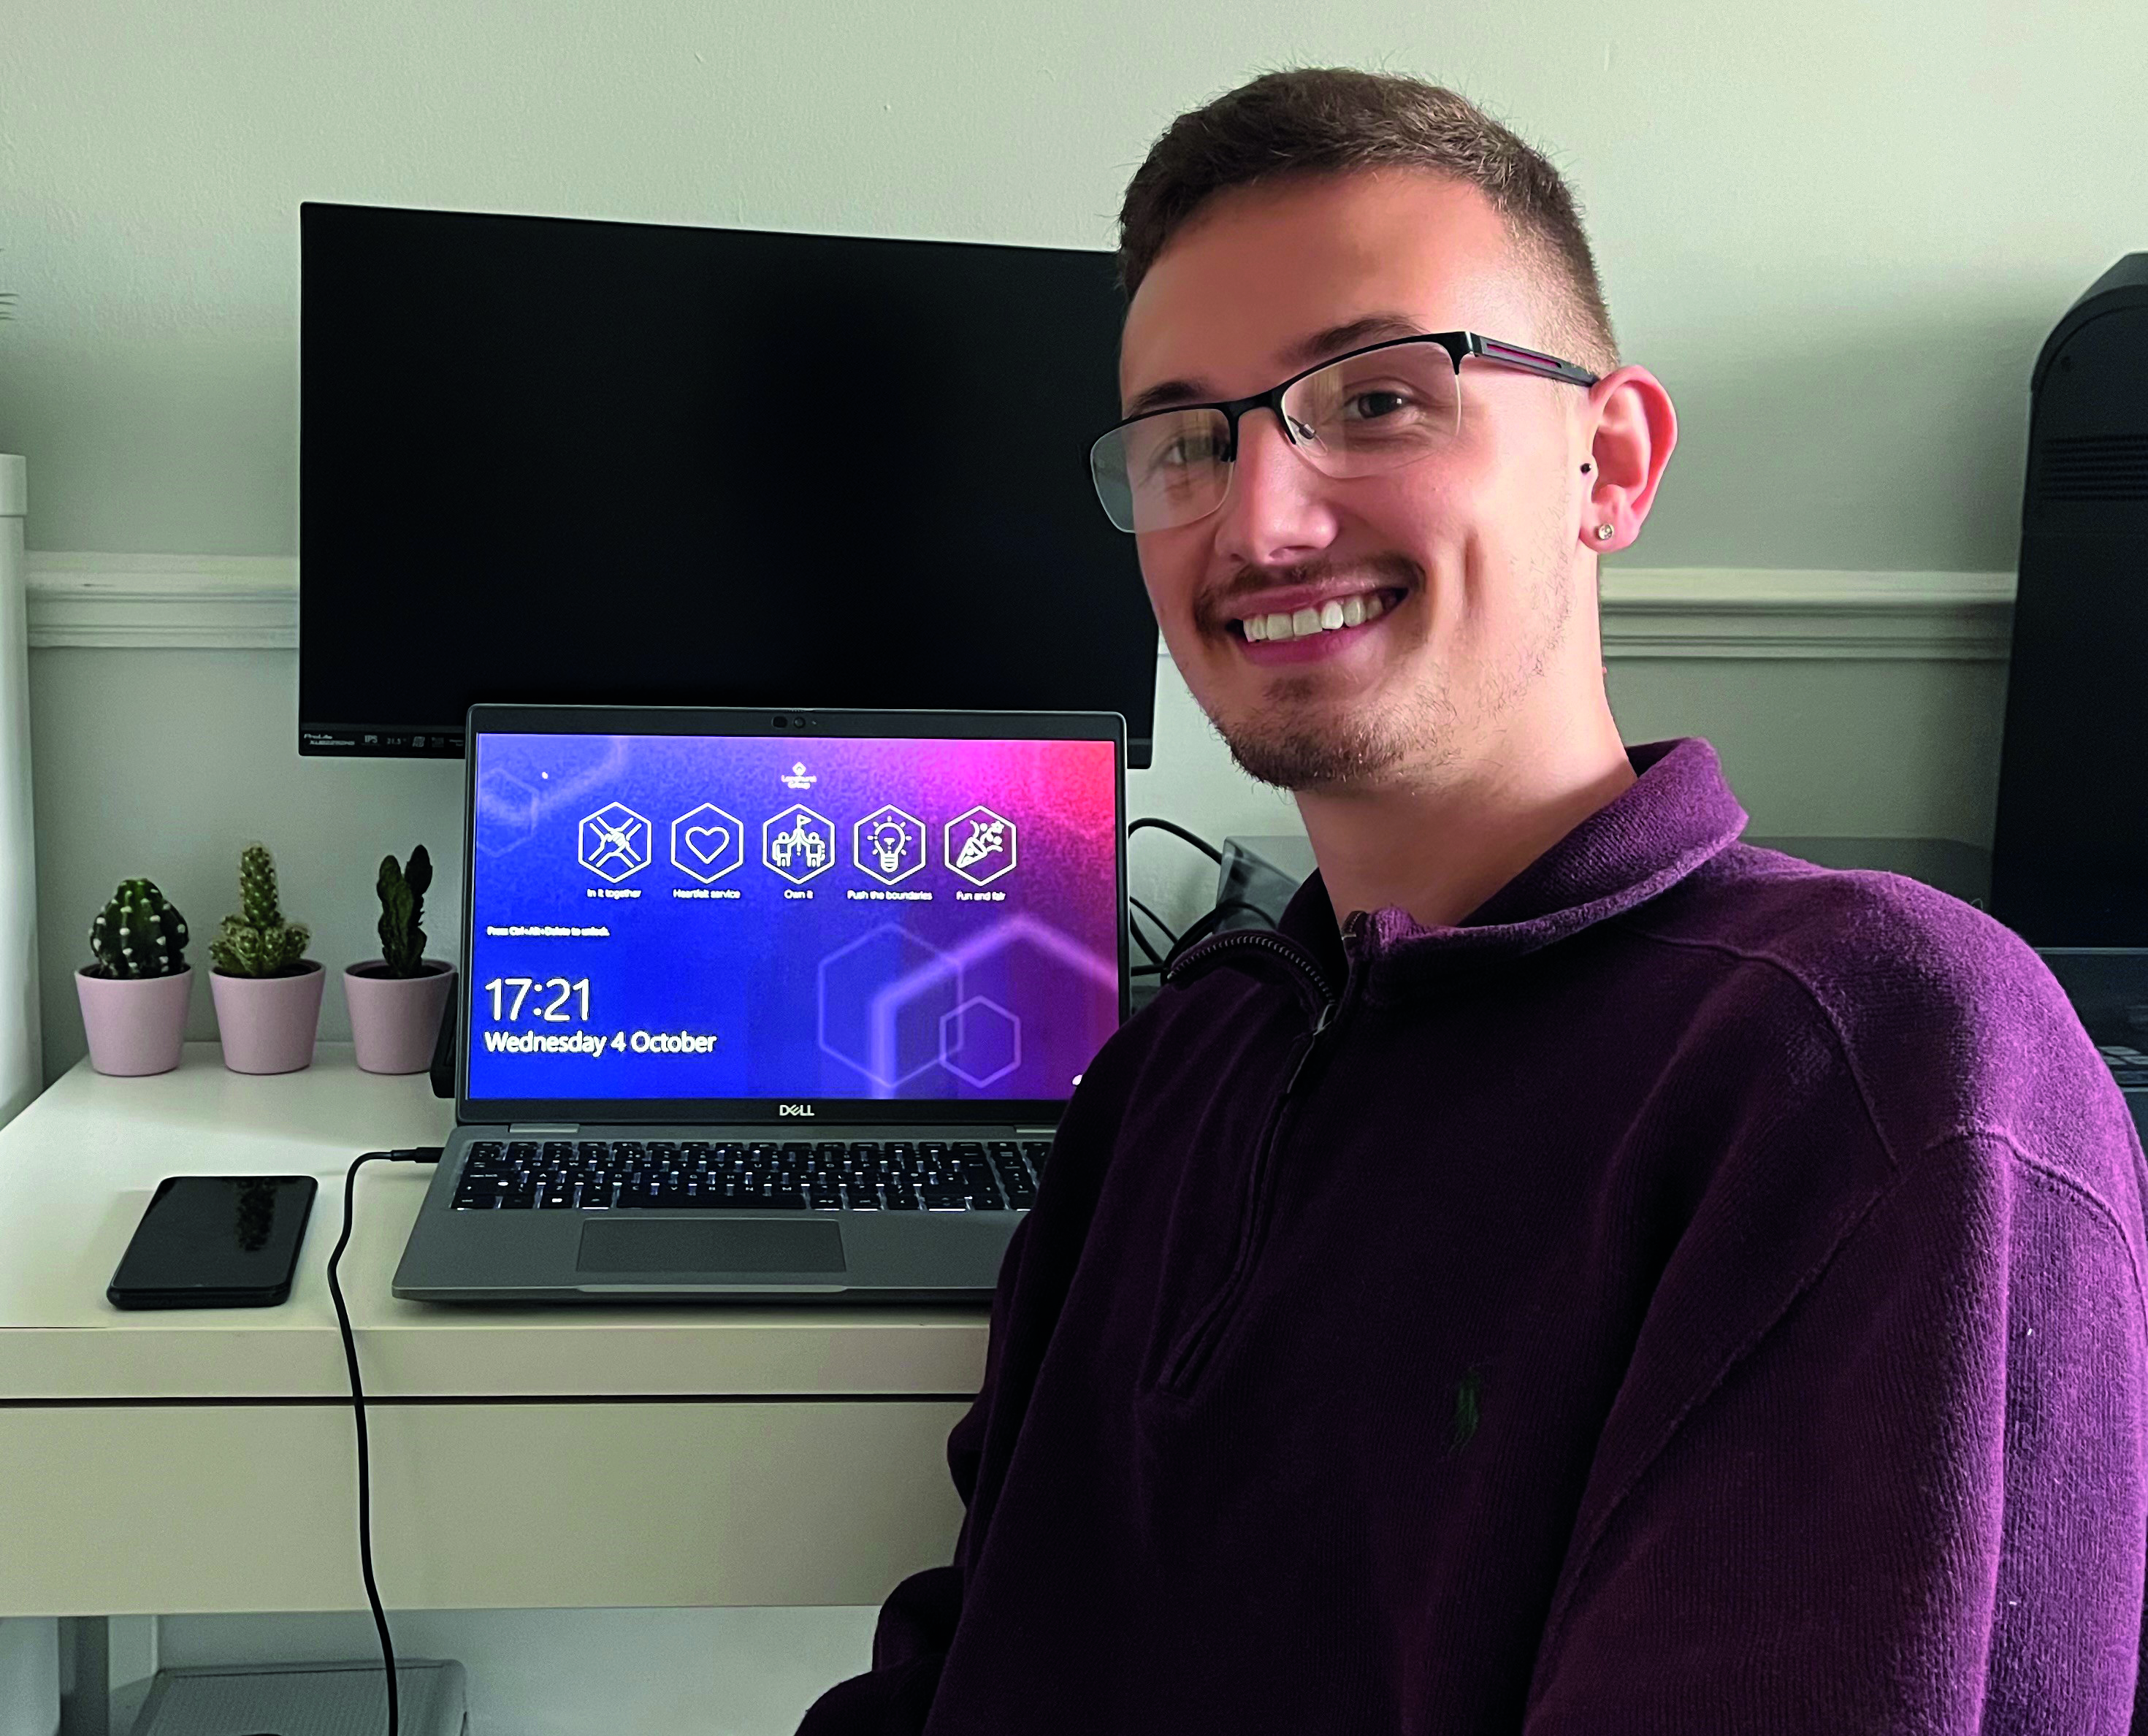 Man smiling next to a laptop